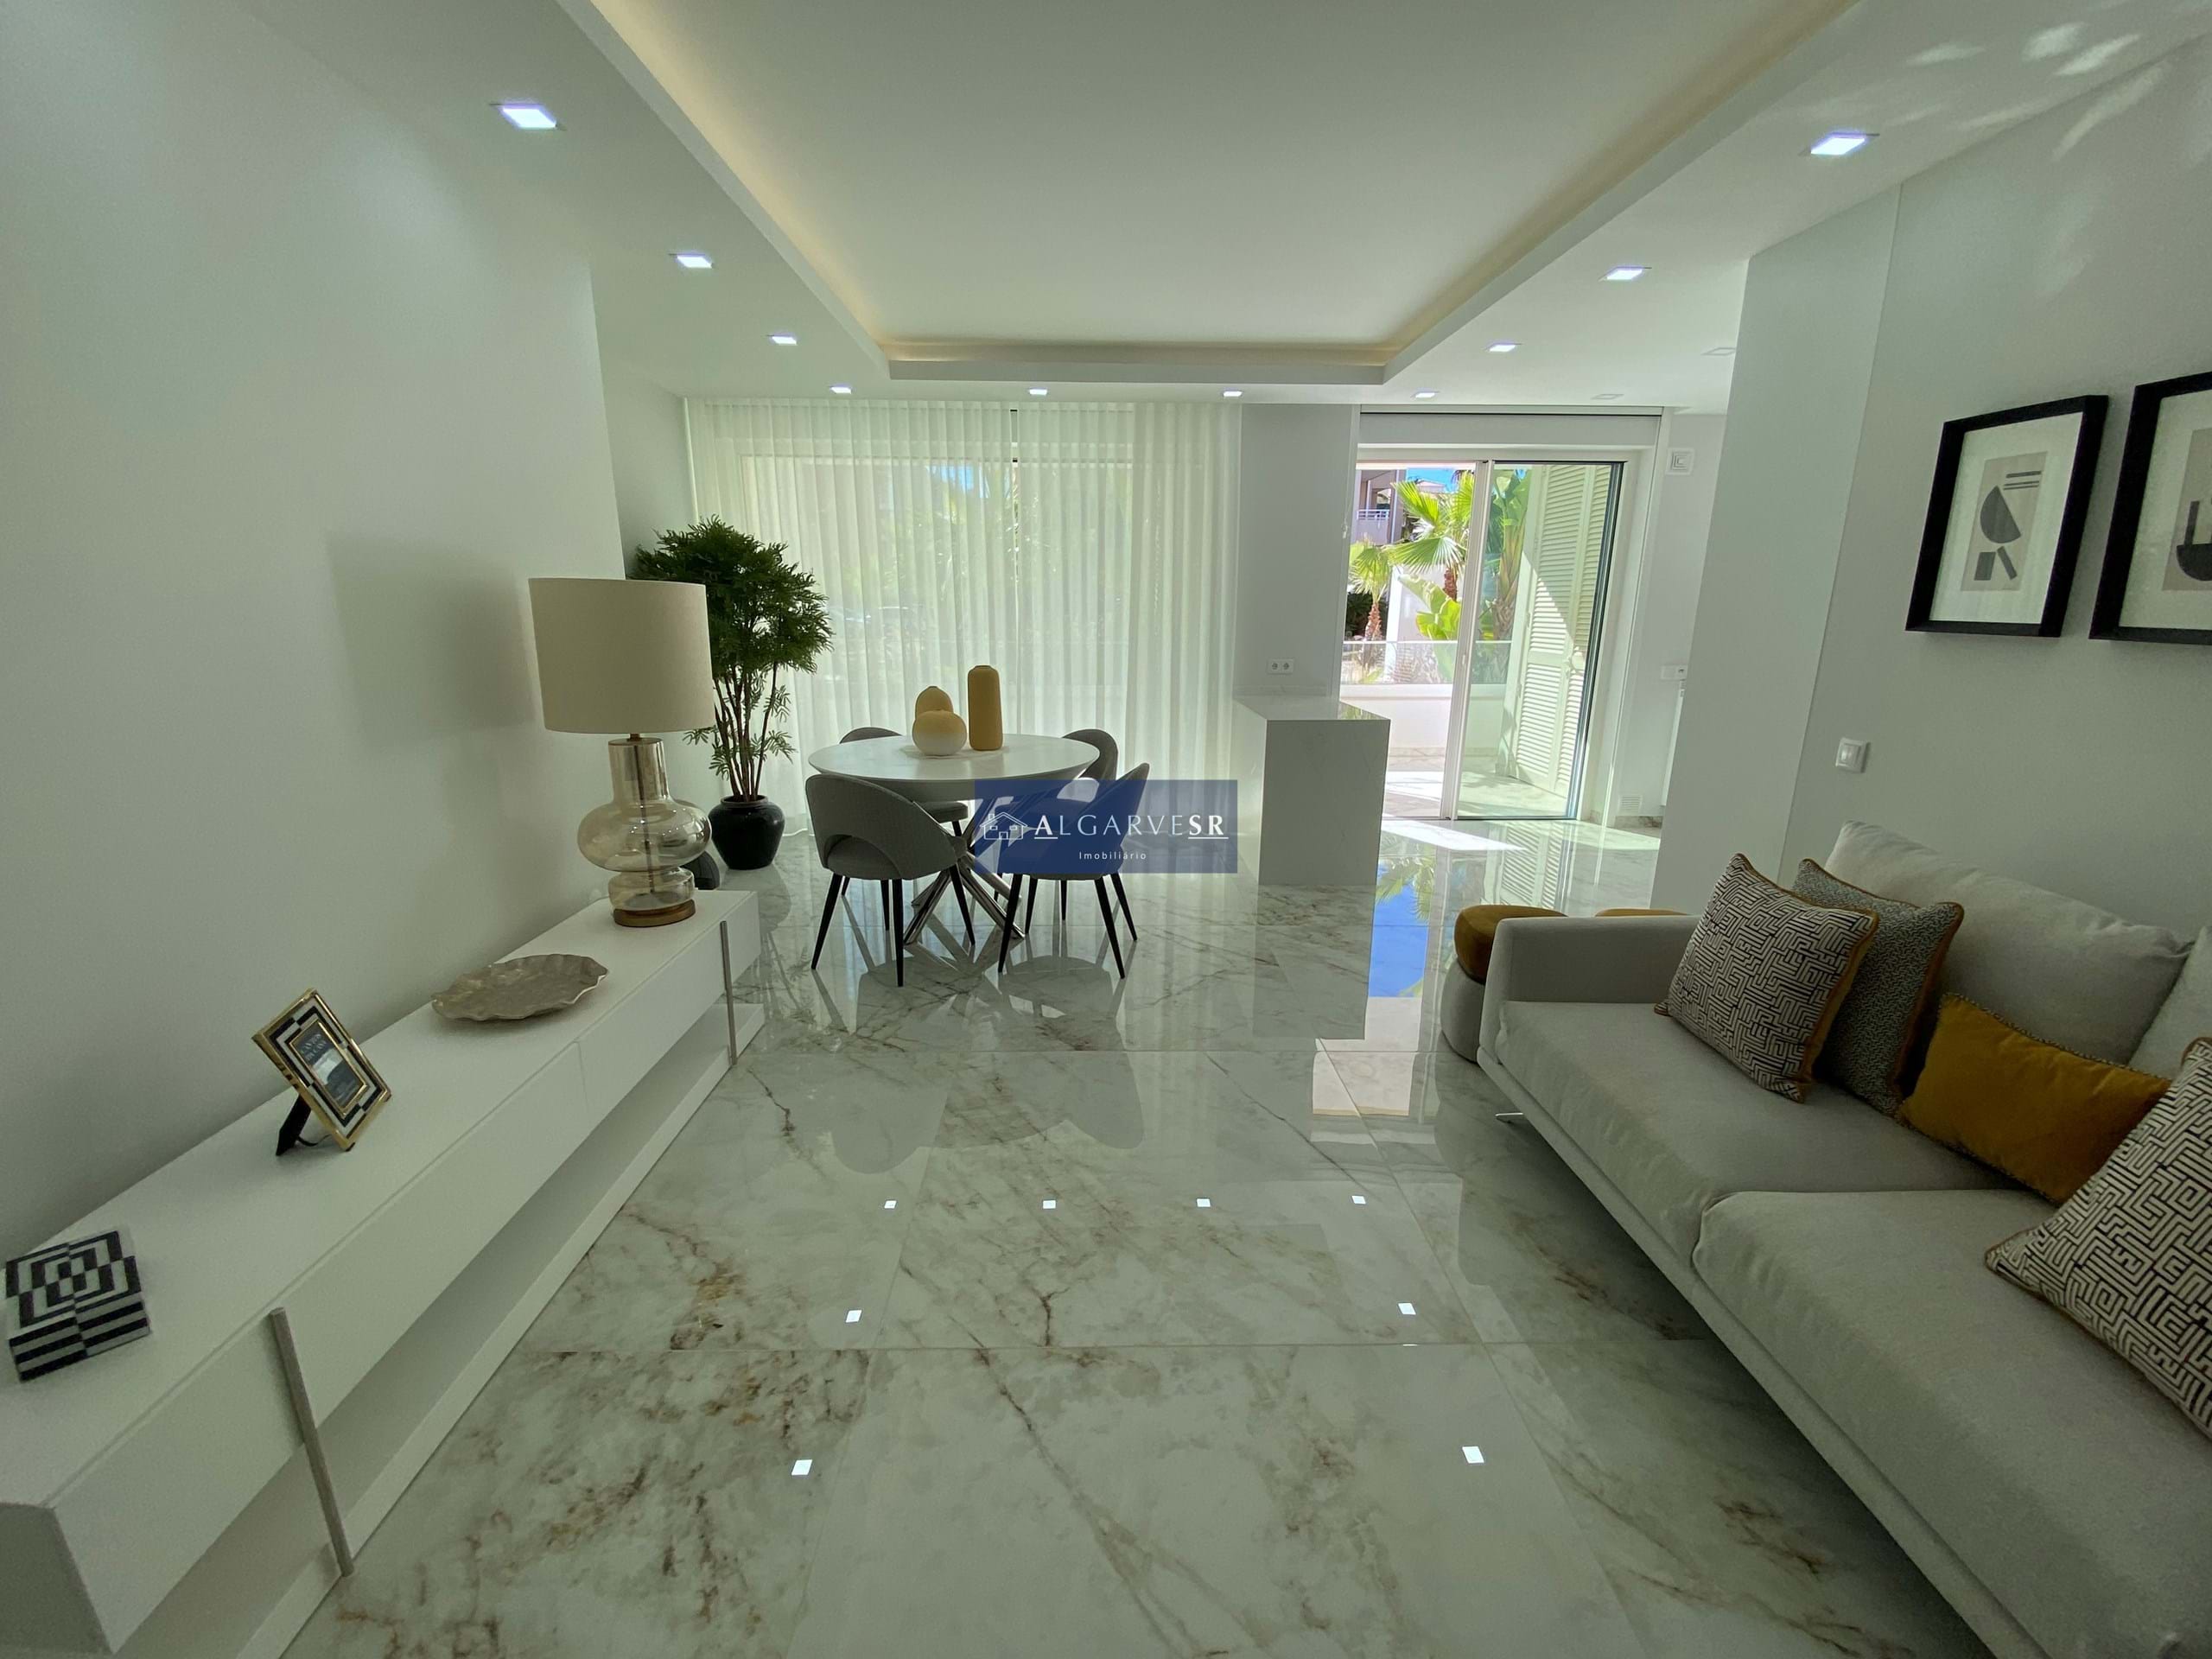 Lagos - Appartement neuf T2 condominium de luxe avec piscine